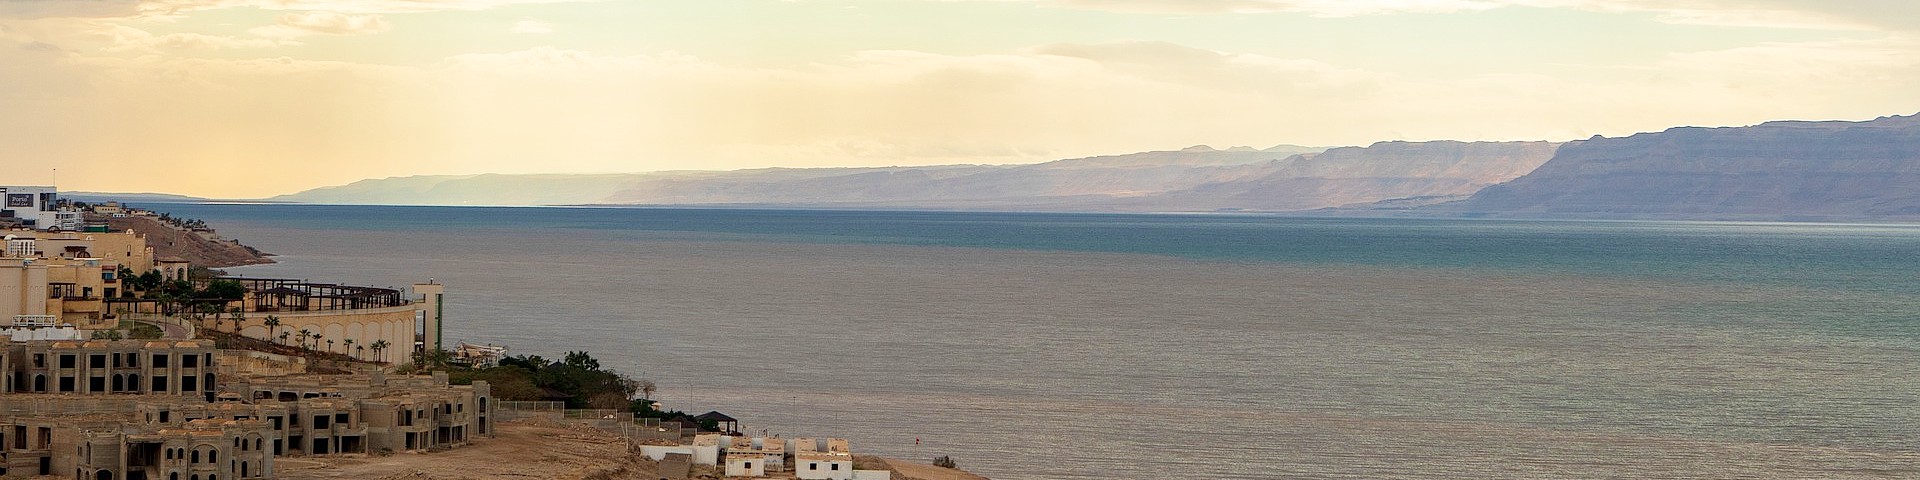 Dead Sea in Jordan